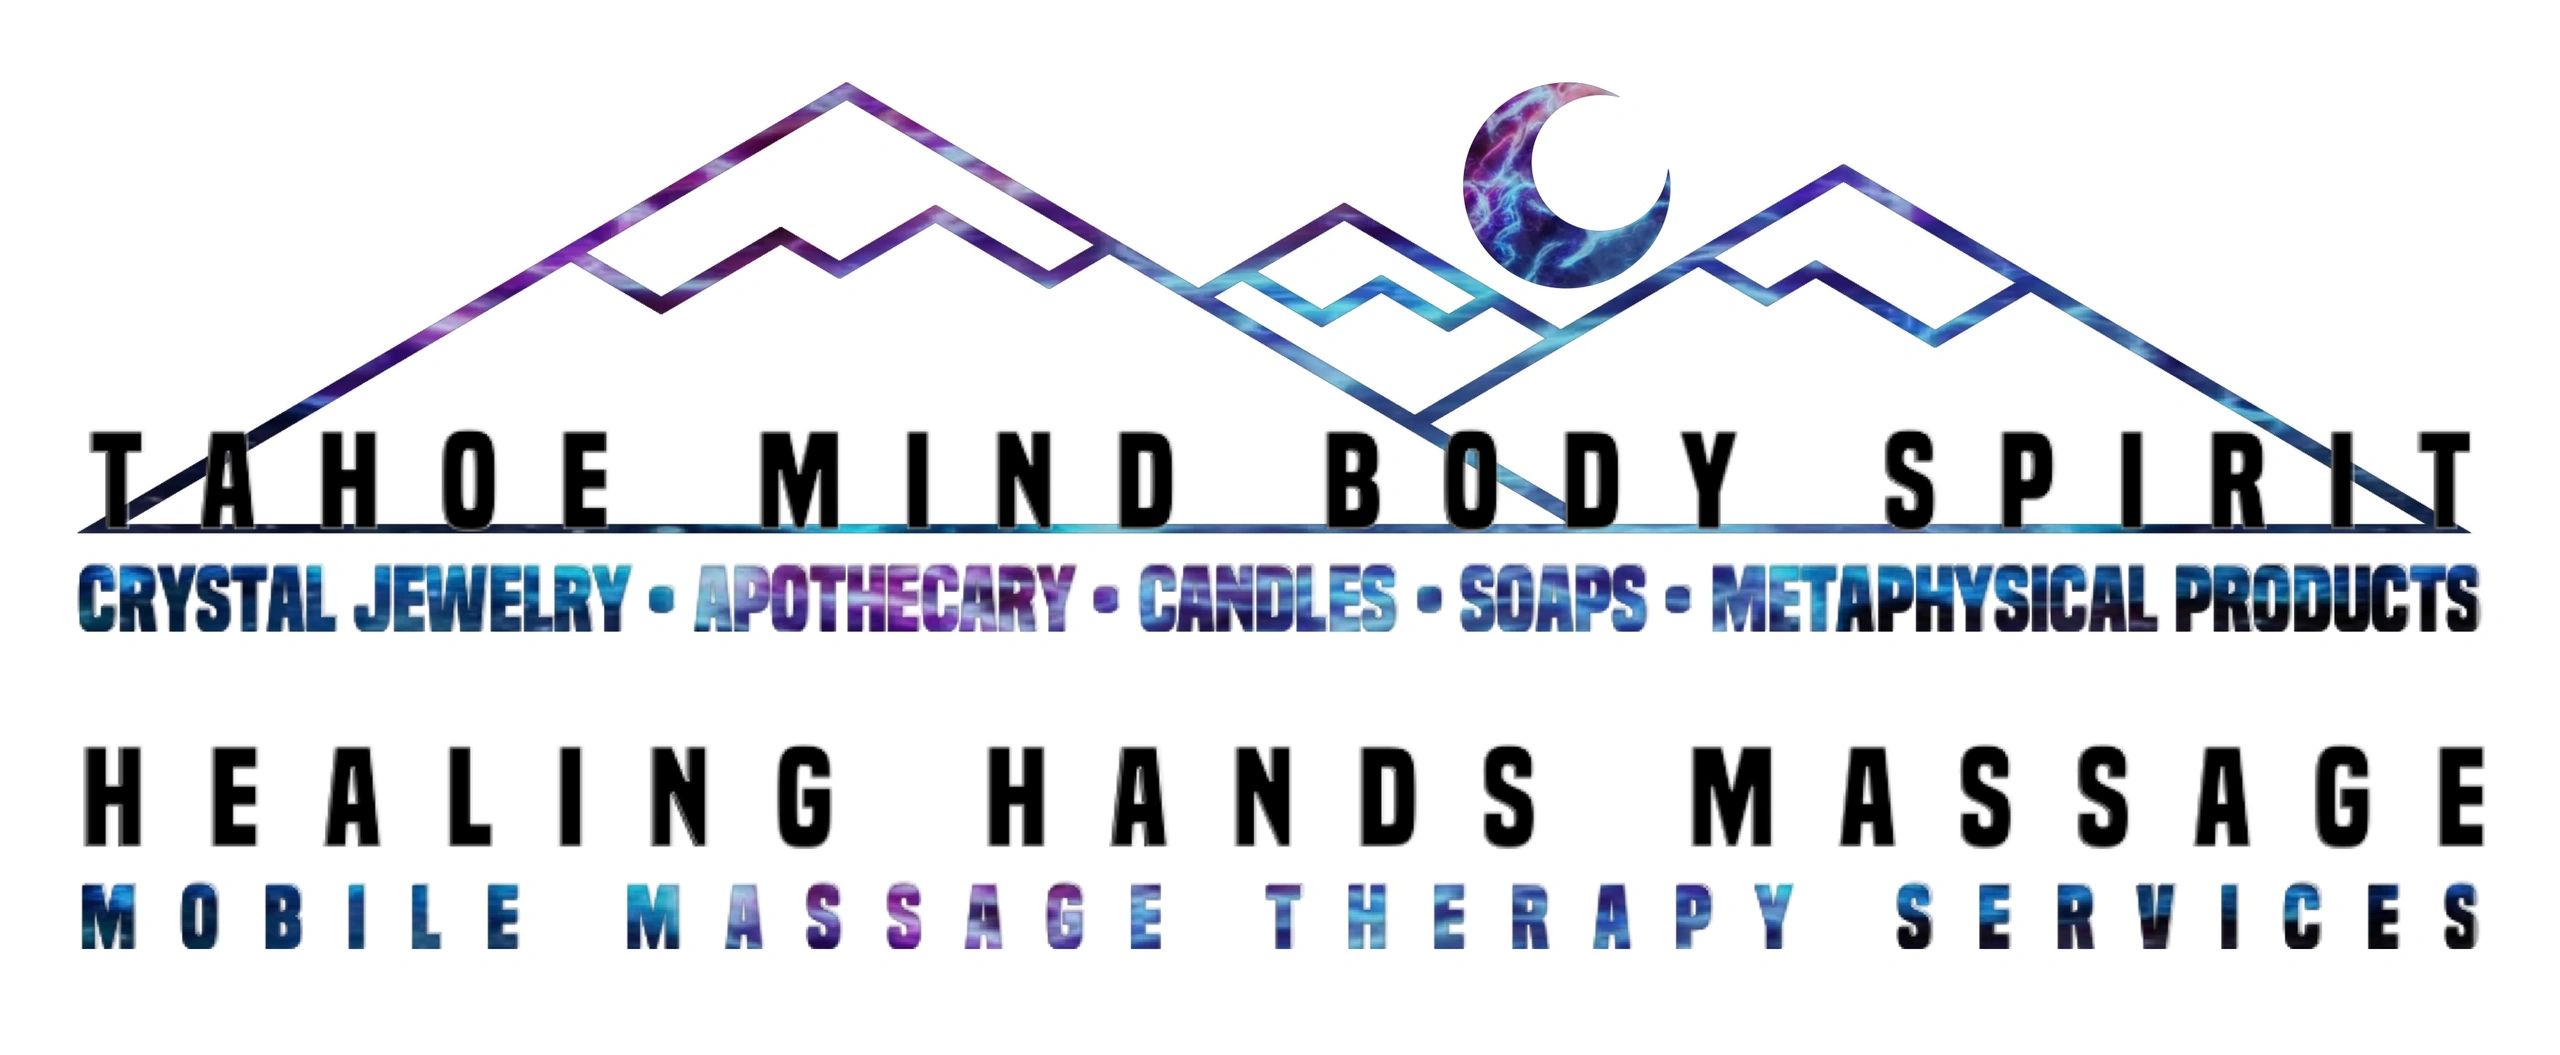 mind body spirit logo